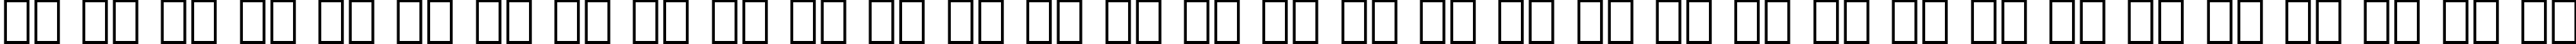 Пример написания русского алфавита шрифтом Zurich Extra Black BT